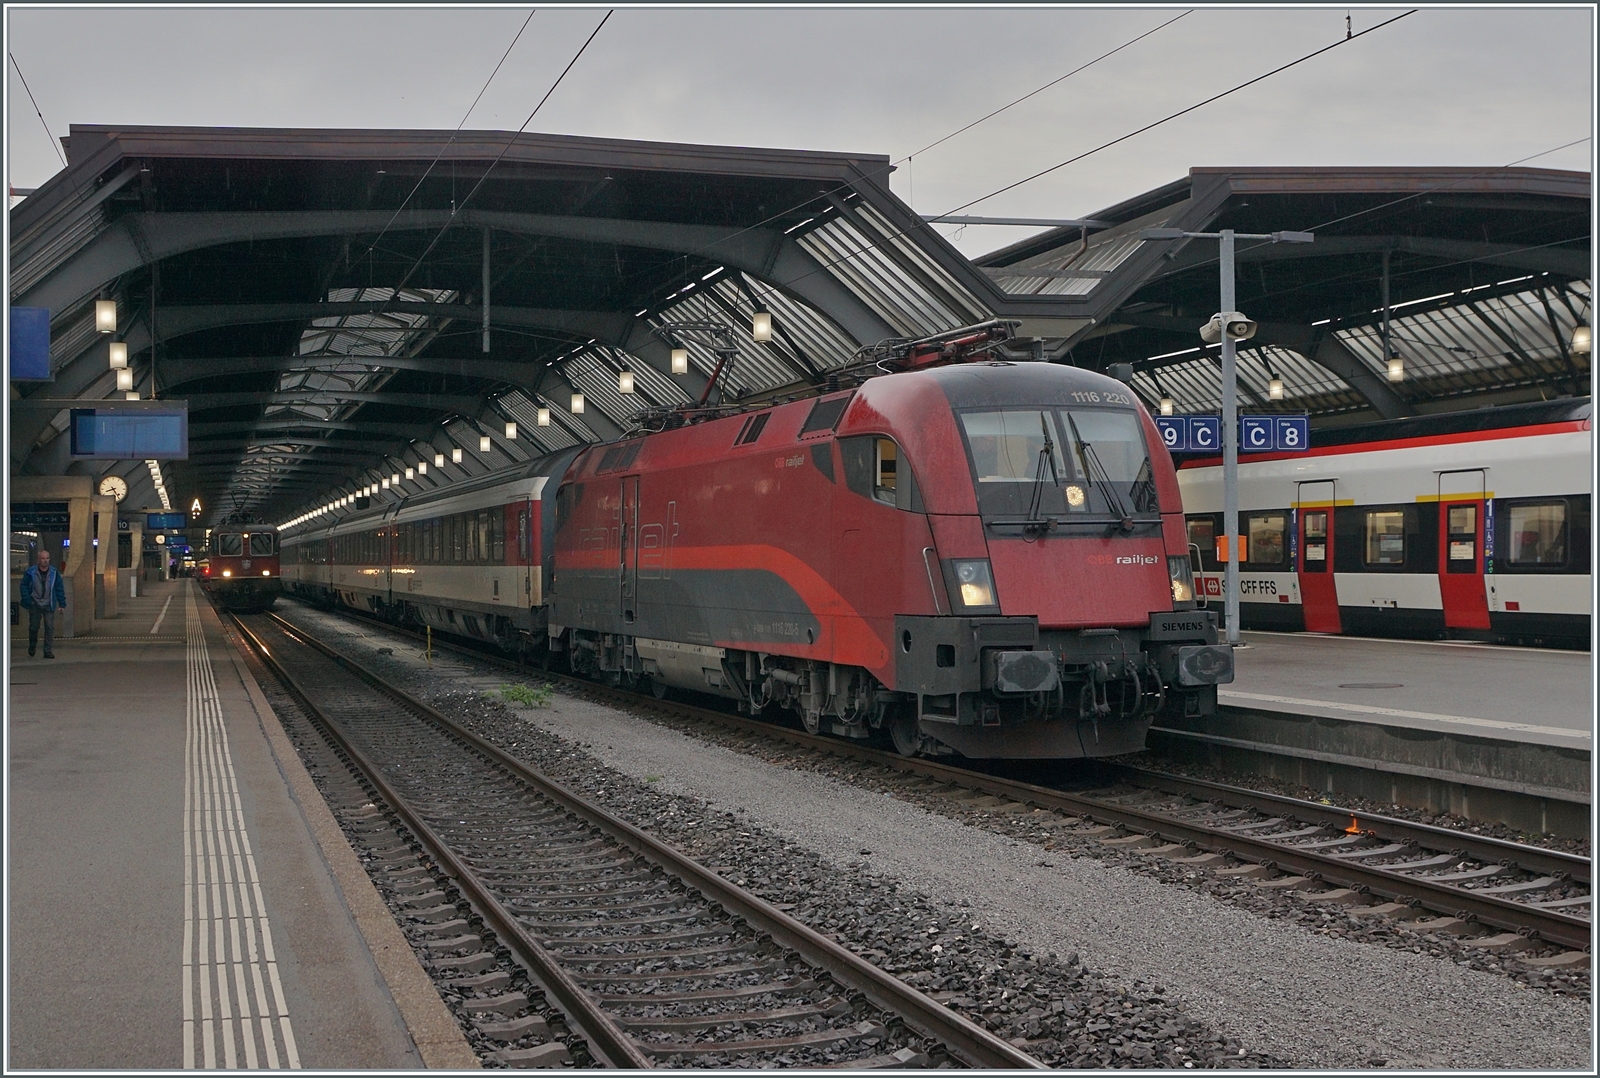 Die ÖBB 1116 220 stellt in Zürich den  Transalpin  19793 nach Graz bereit. Zwar sind ÖBB Lokomotiven in Zürich HB keine Seltenheit, aber sei kommen jeweils mit RJ-Garnituren nach Zürich. Eine ÖBB 1116 vor SBB Wagen hingegen stellt schon die Ausnahme dar. Dies dürfte damit zusammen hängen, dass der Zug hat infolge Bauarbeiten den ungewohnten Laufweg Zürich - Bregenz - München - Salzburg - Schwarzach St. Veit Bischofshofen - Leoben - Graz hat. Der EC Transalpin wird 12 Stunden und 59 Minuten unterwegs sein.

19. Okt. 2023